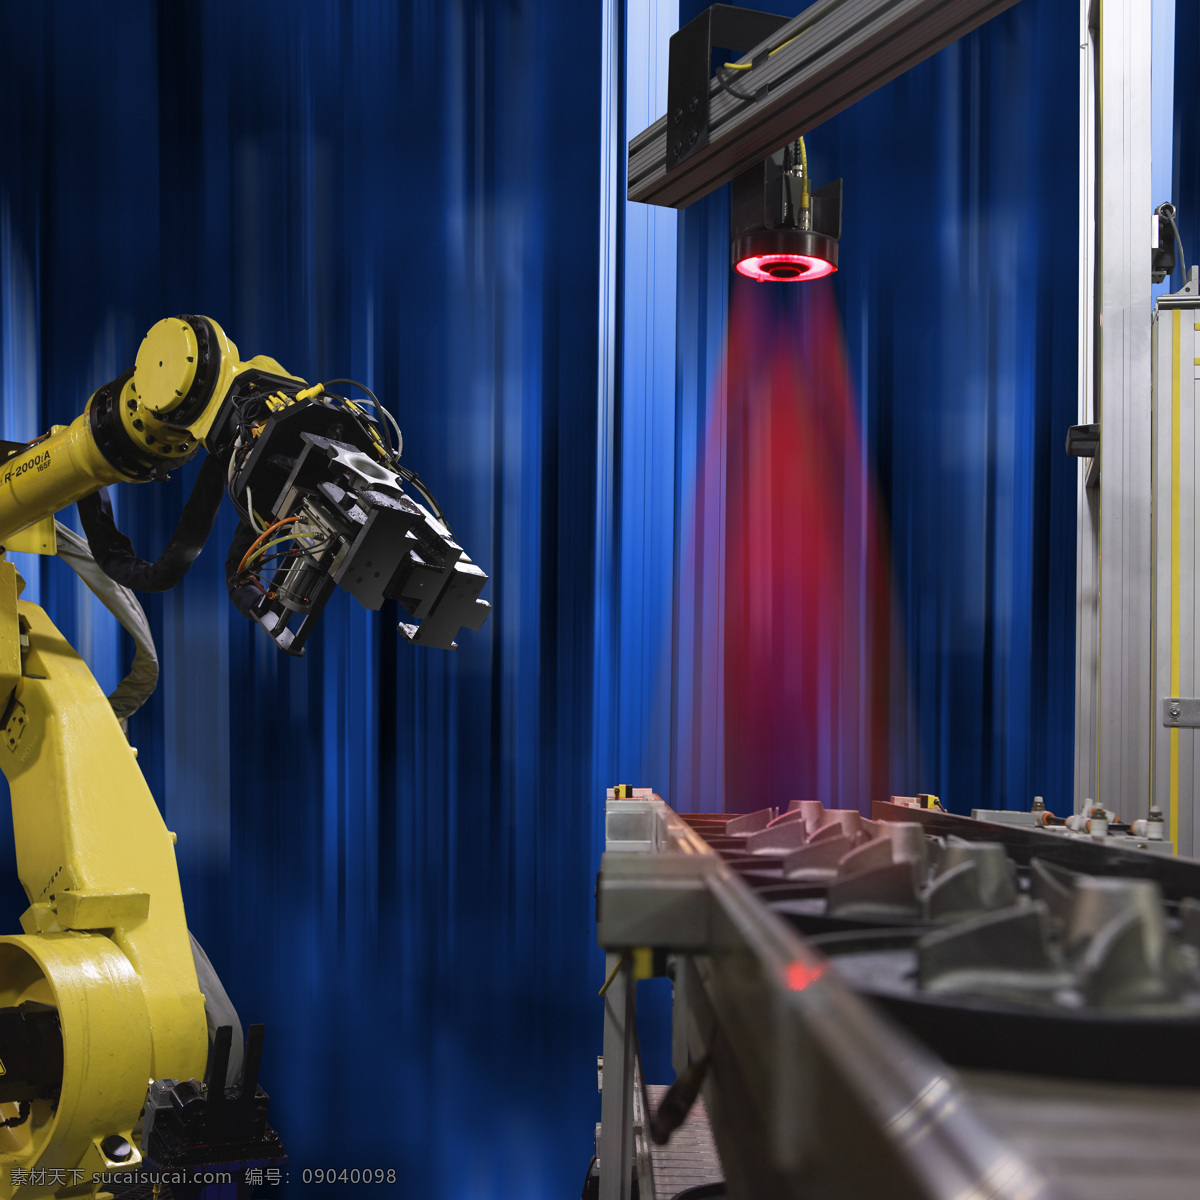 自动化系统 机器人 自动化 视觉系统 机械手臂 机器制造 工业生产 现代科技